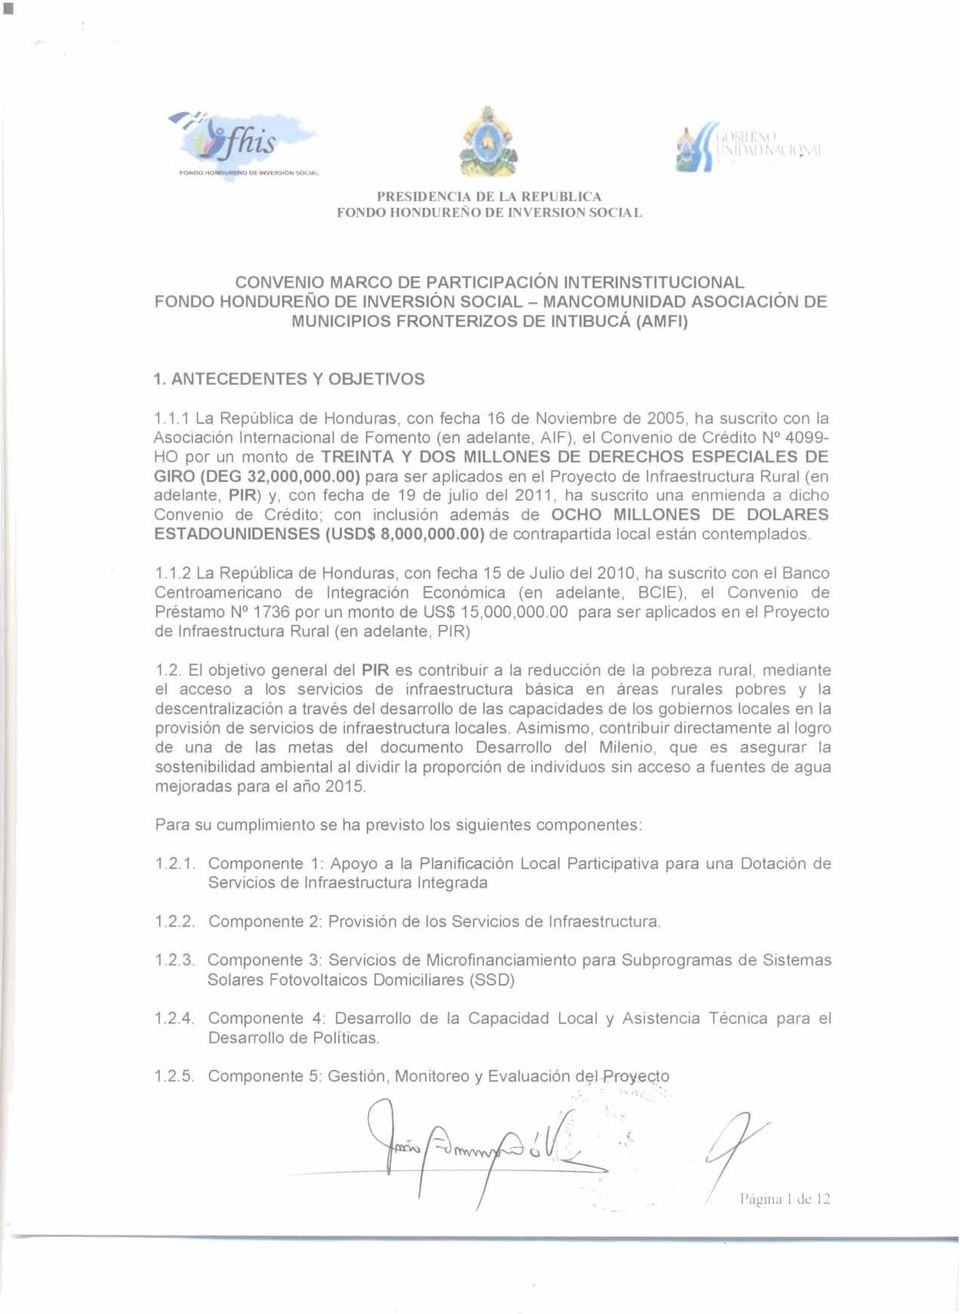 1.1 La República de Honduras, con fecha 16 de Noviembre de 2005, ha suscrito con la Asociación Internacional de Fomento (en adelante, AIF), el Convenio de Crédito No 4099- HO por un monto de TREINTA